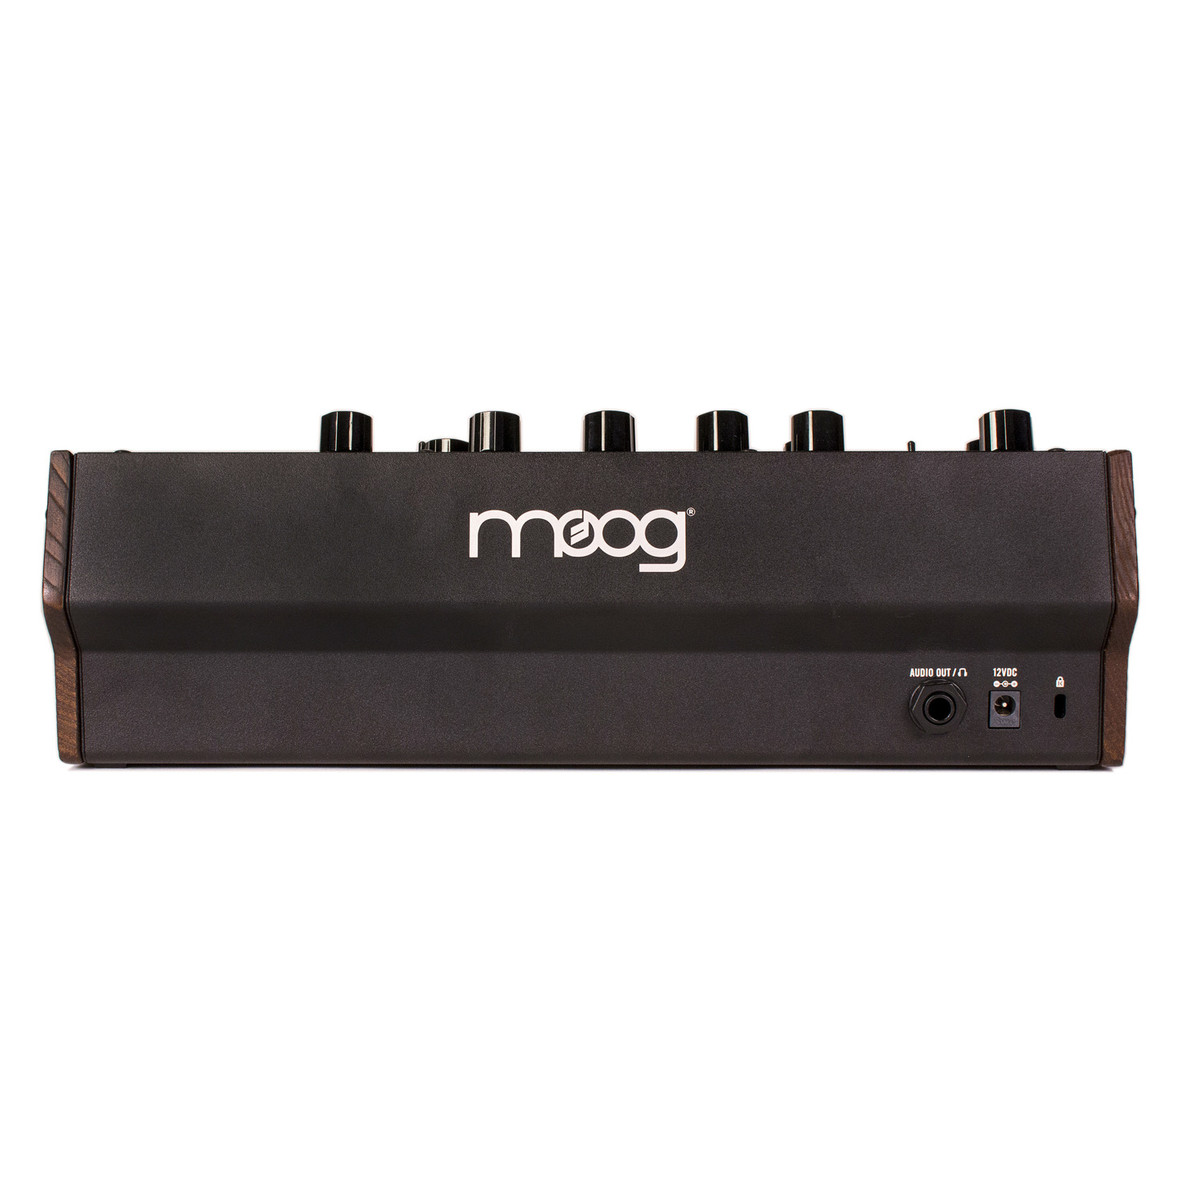 Moog Mother-32 Analog Modular Synthesizer